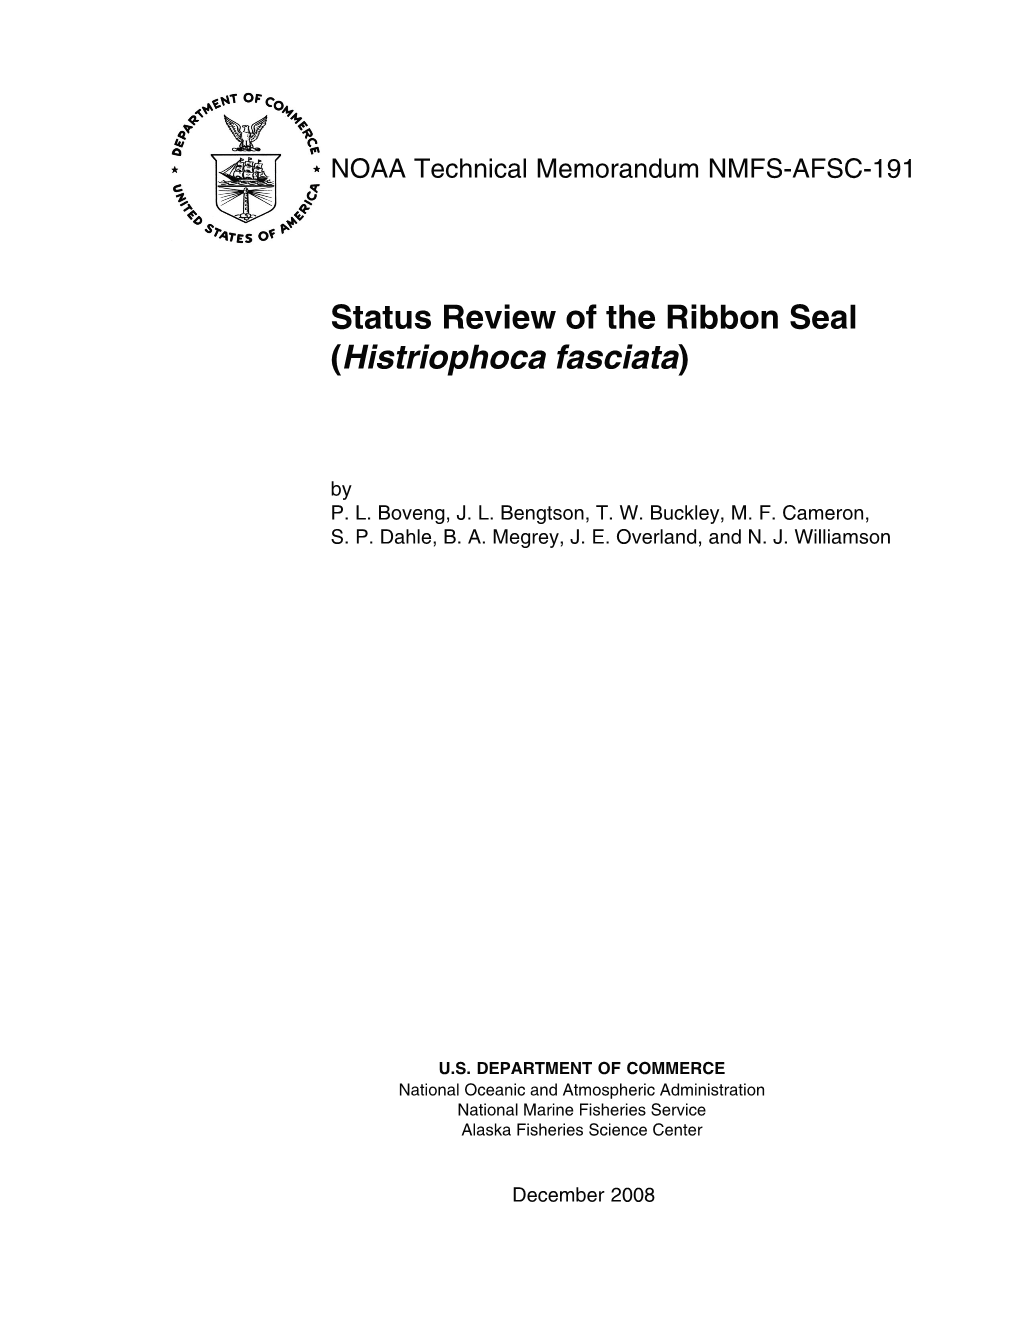 Status Review of the Ribbon Seal (Histriophoca Fasciata), 2008